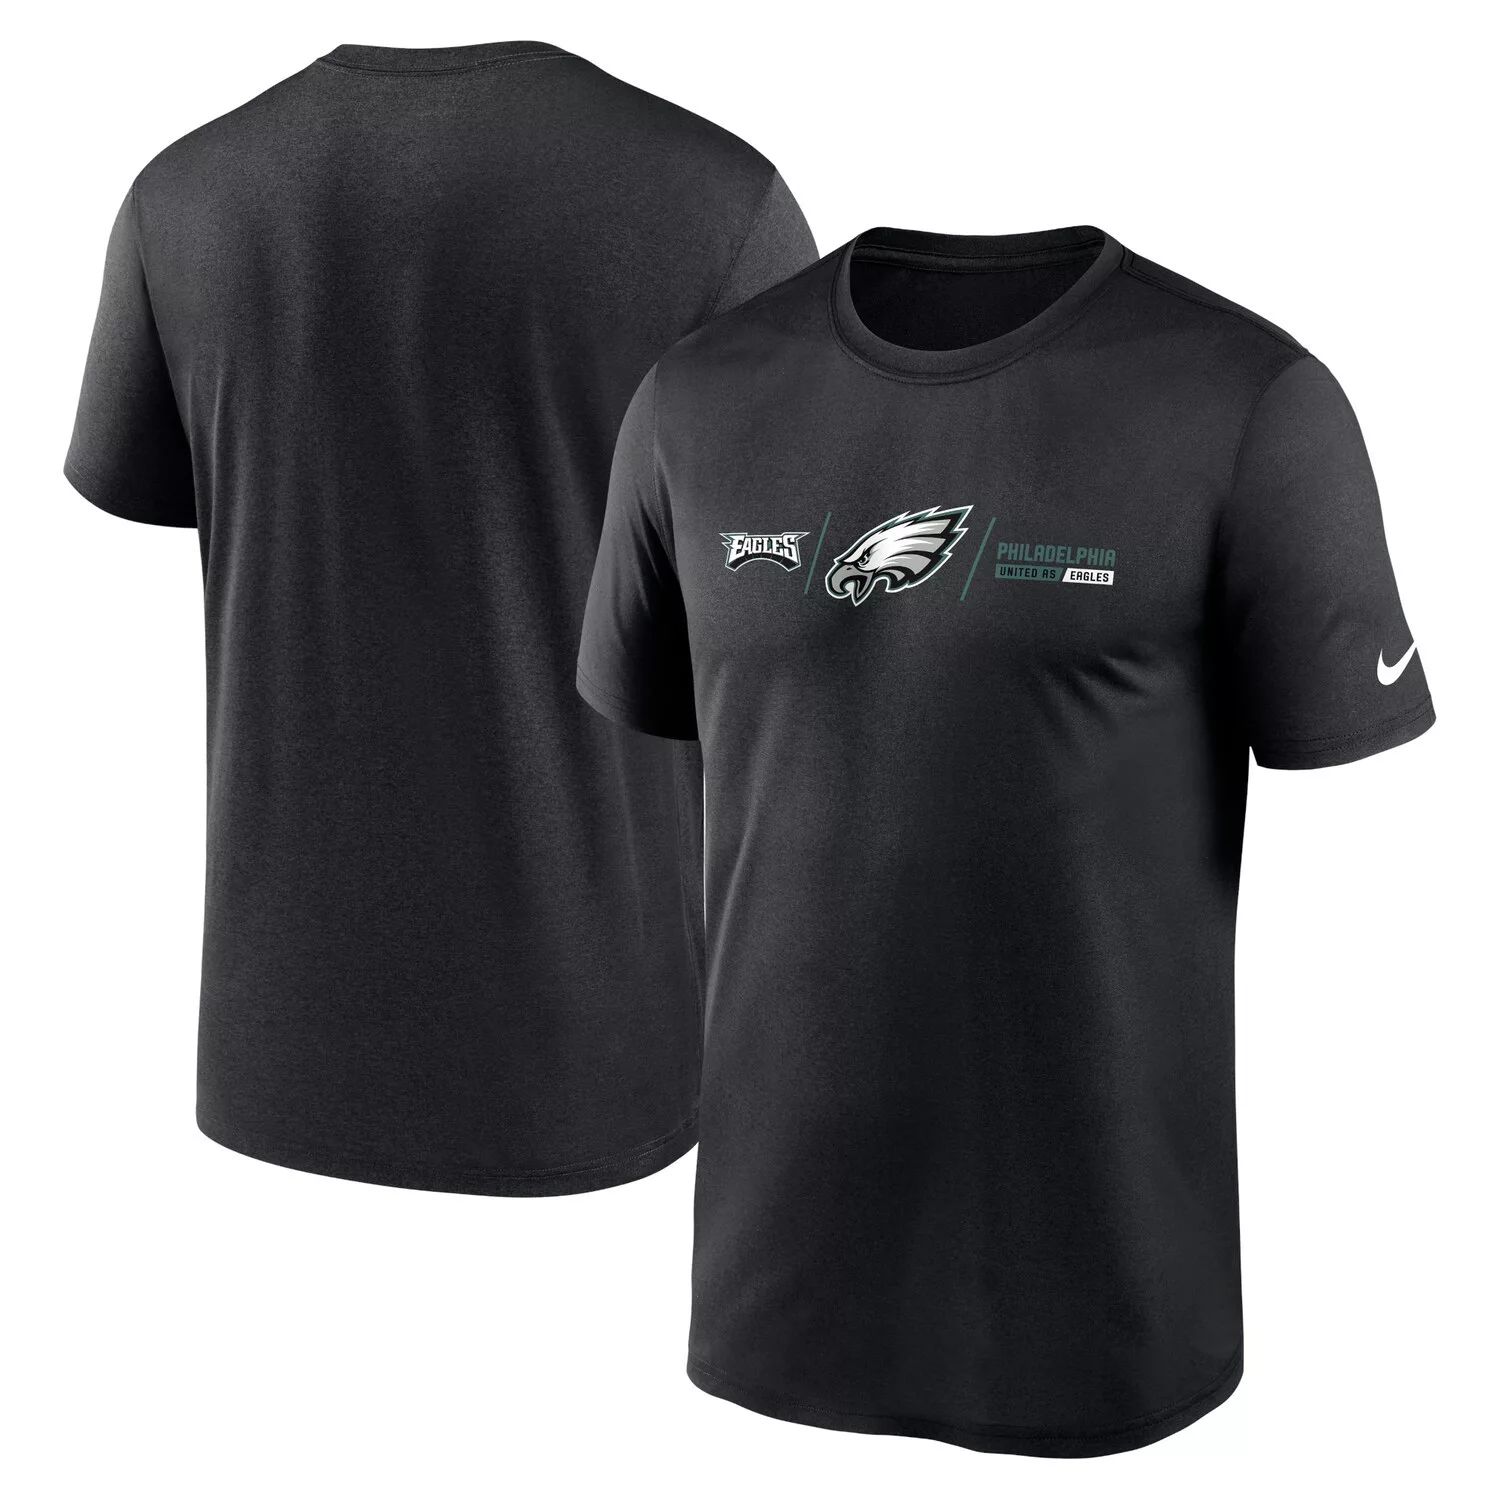 Мужская черная футболка Philadelphia Eagles с горизонтальной блокировкой Legend Nike